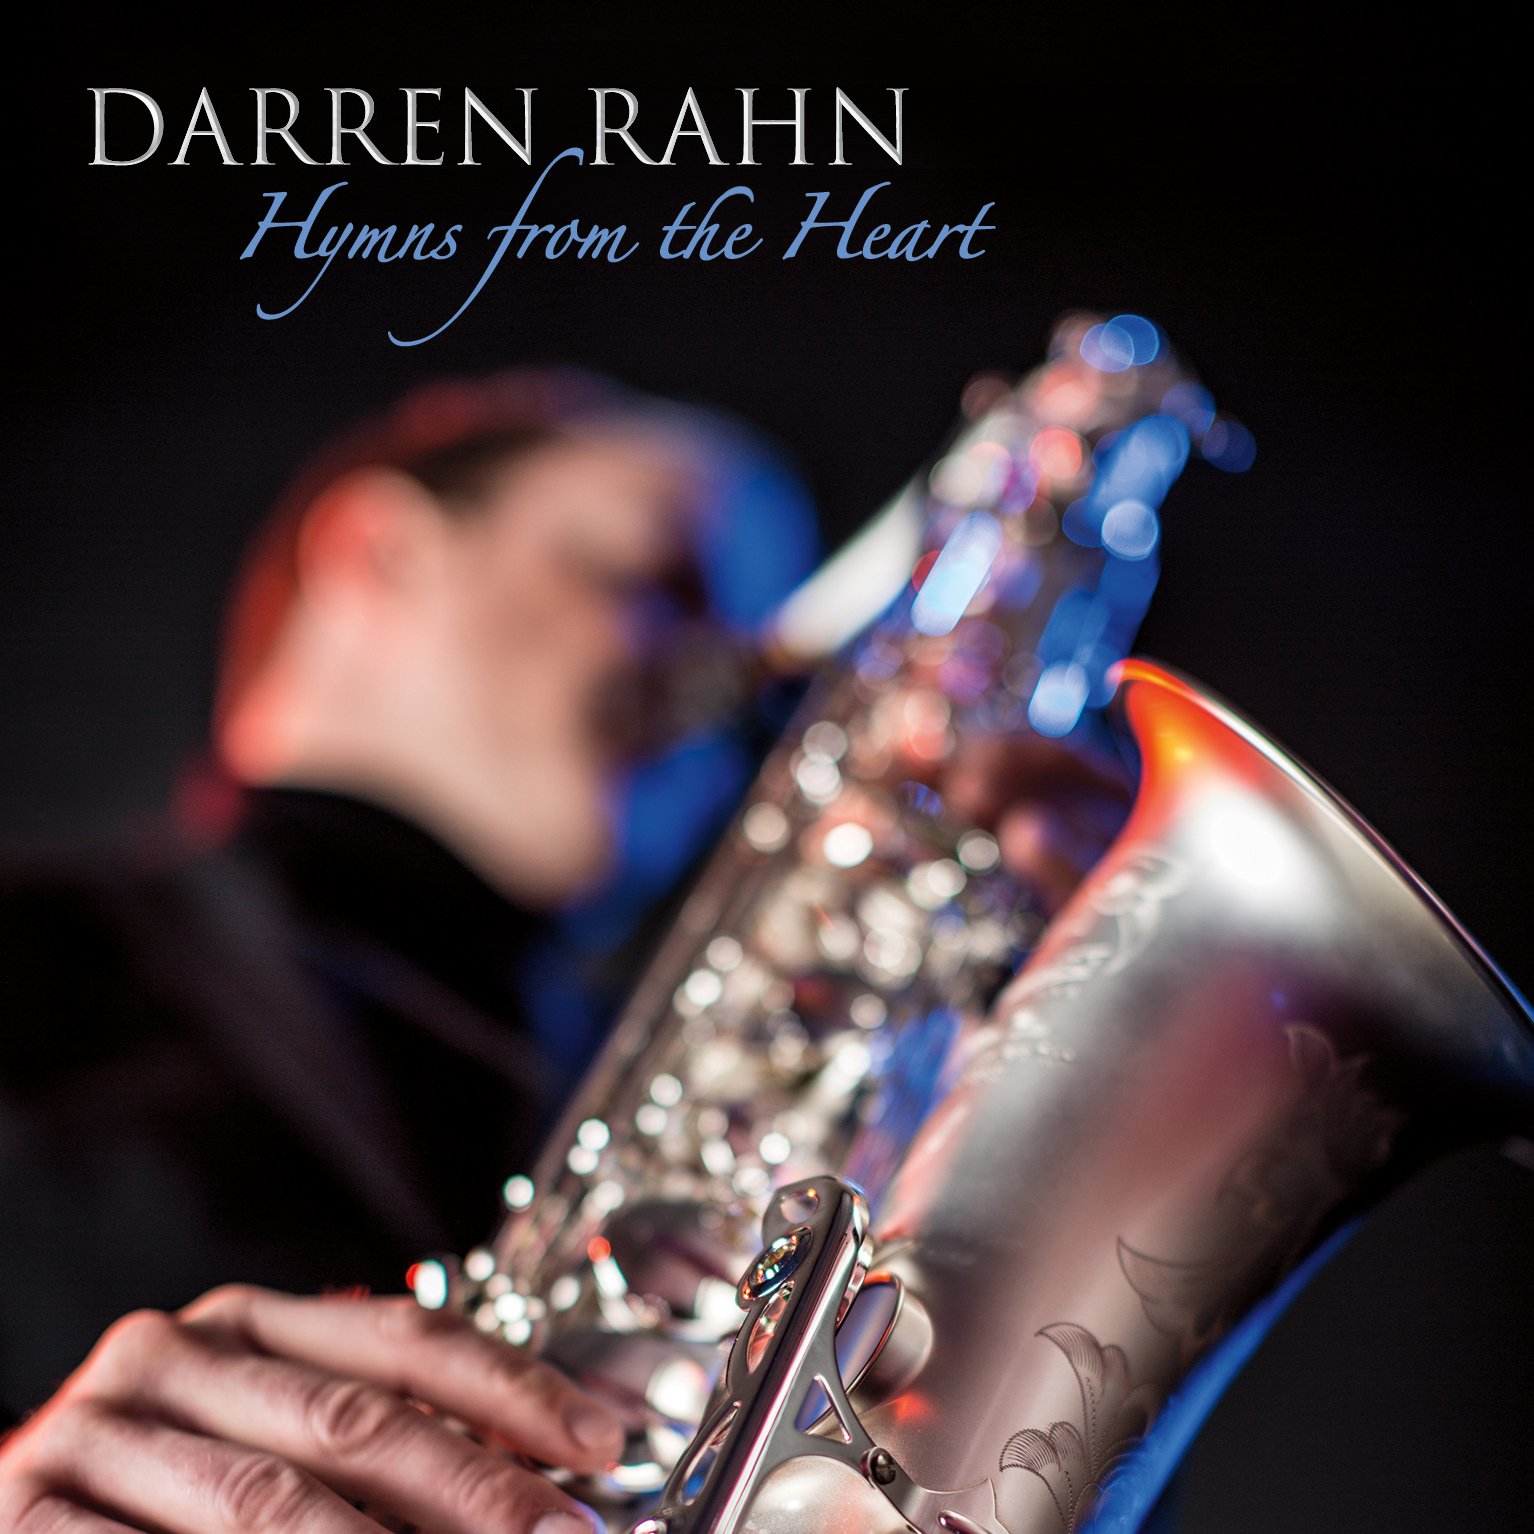 Darren Rahn "Hymns from the Heart" Album